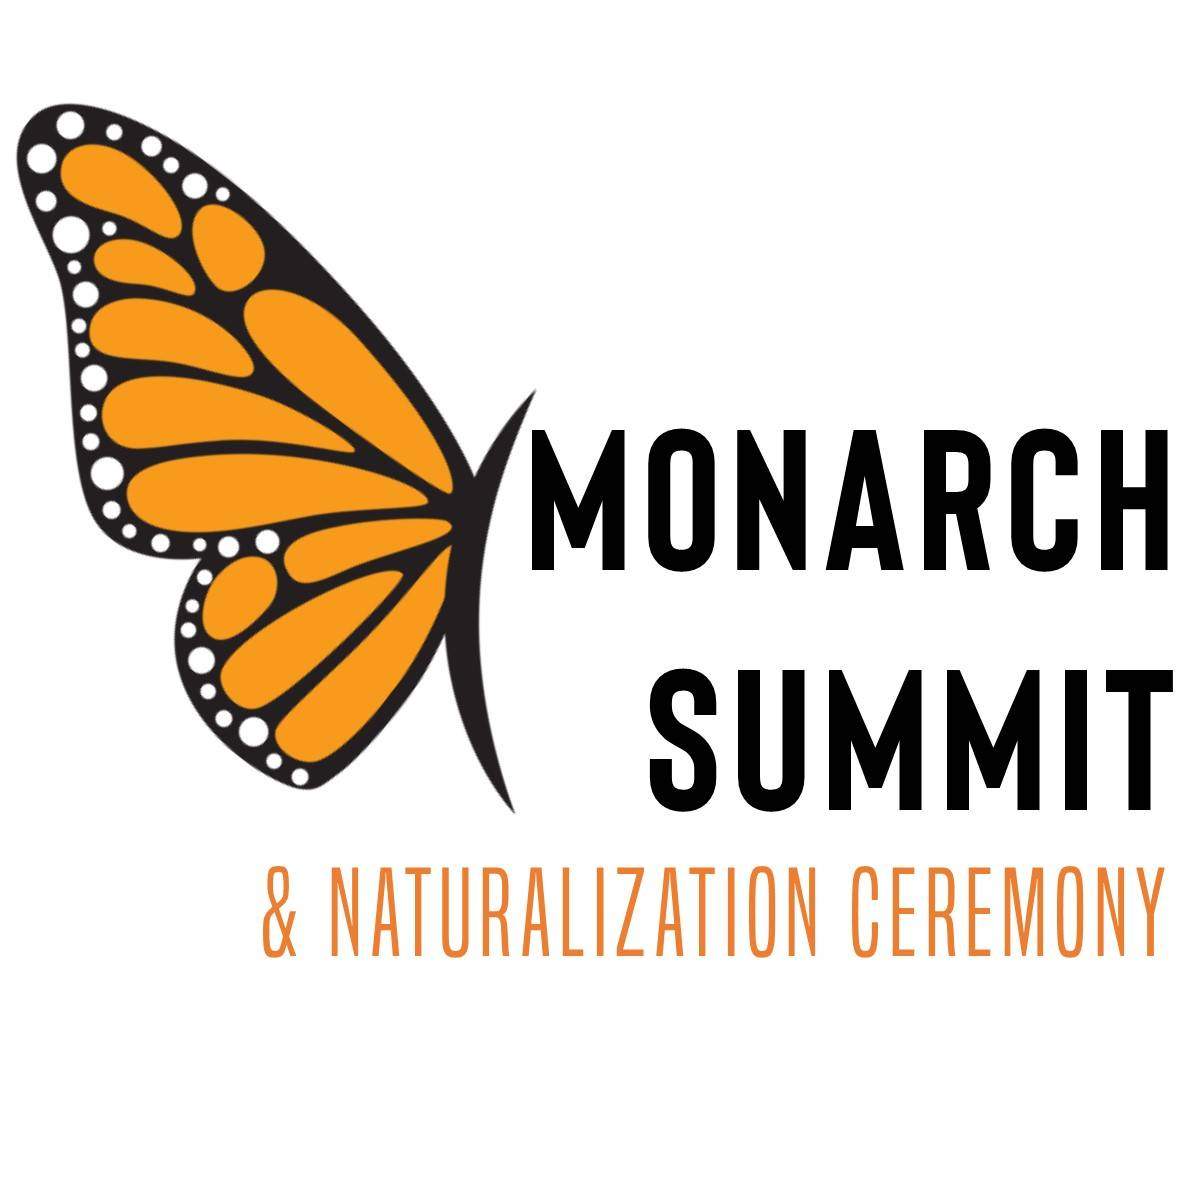 Monarch Summit